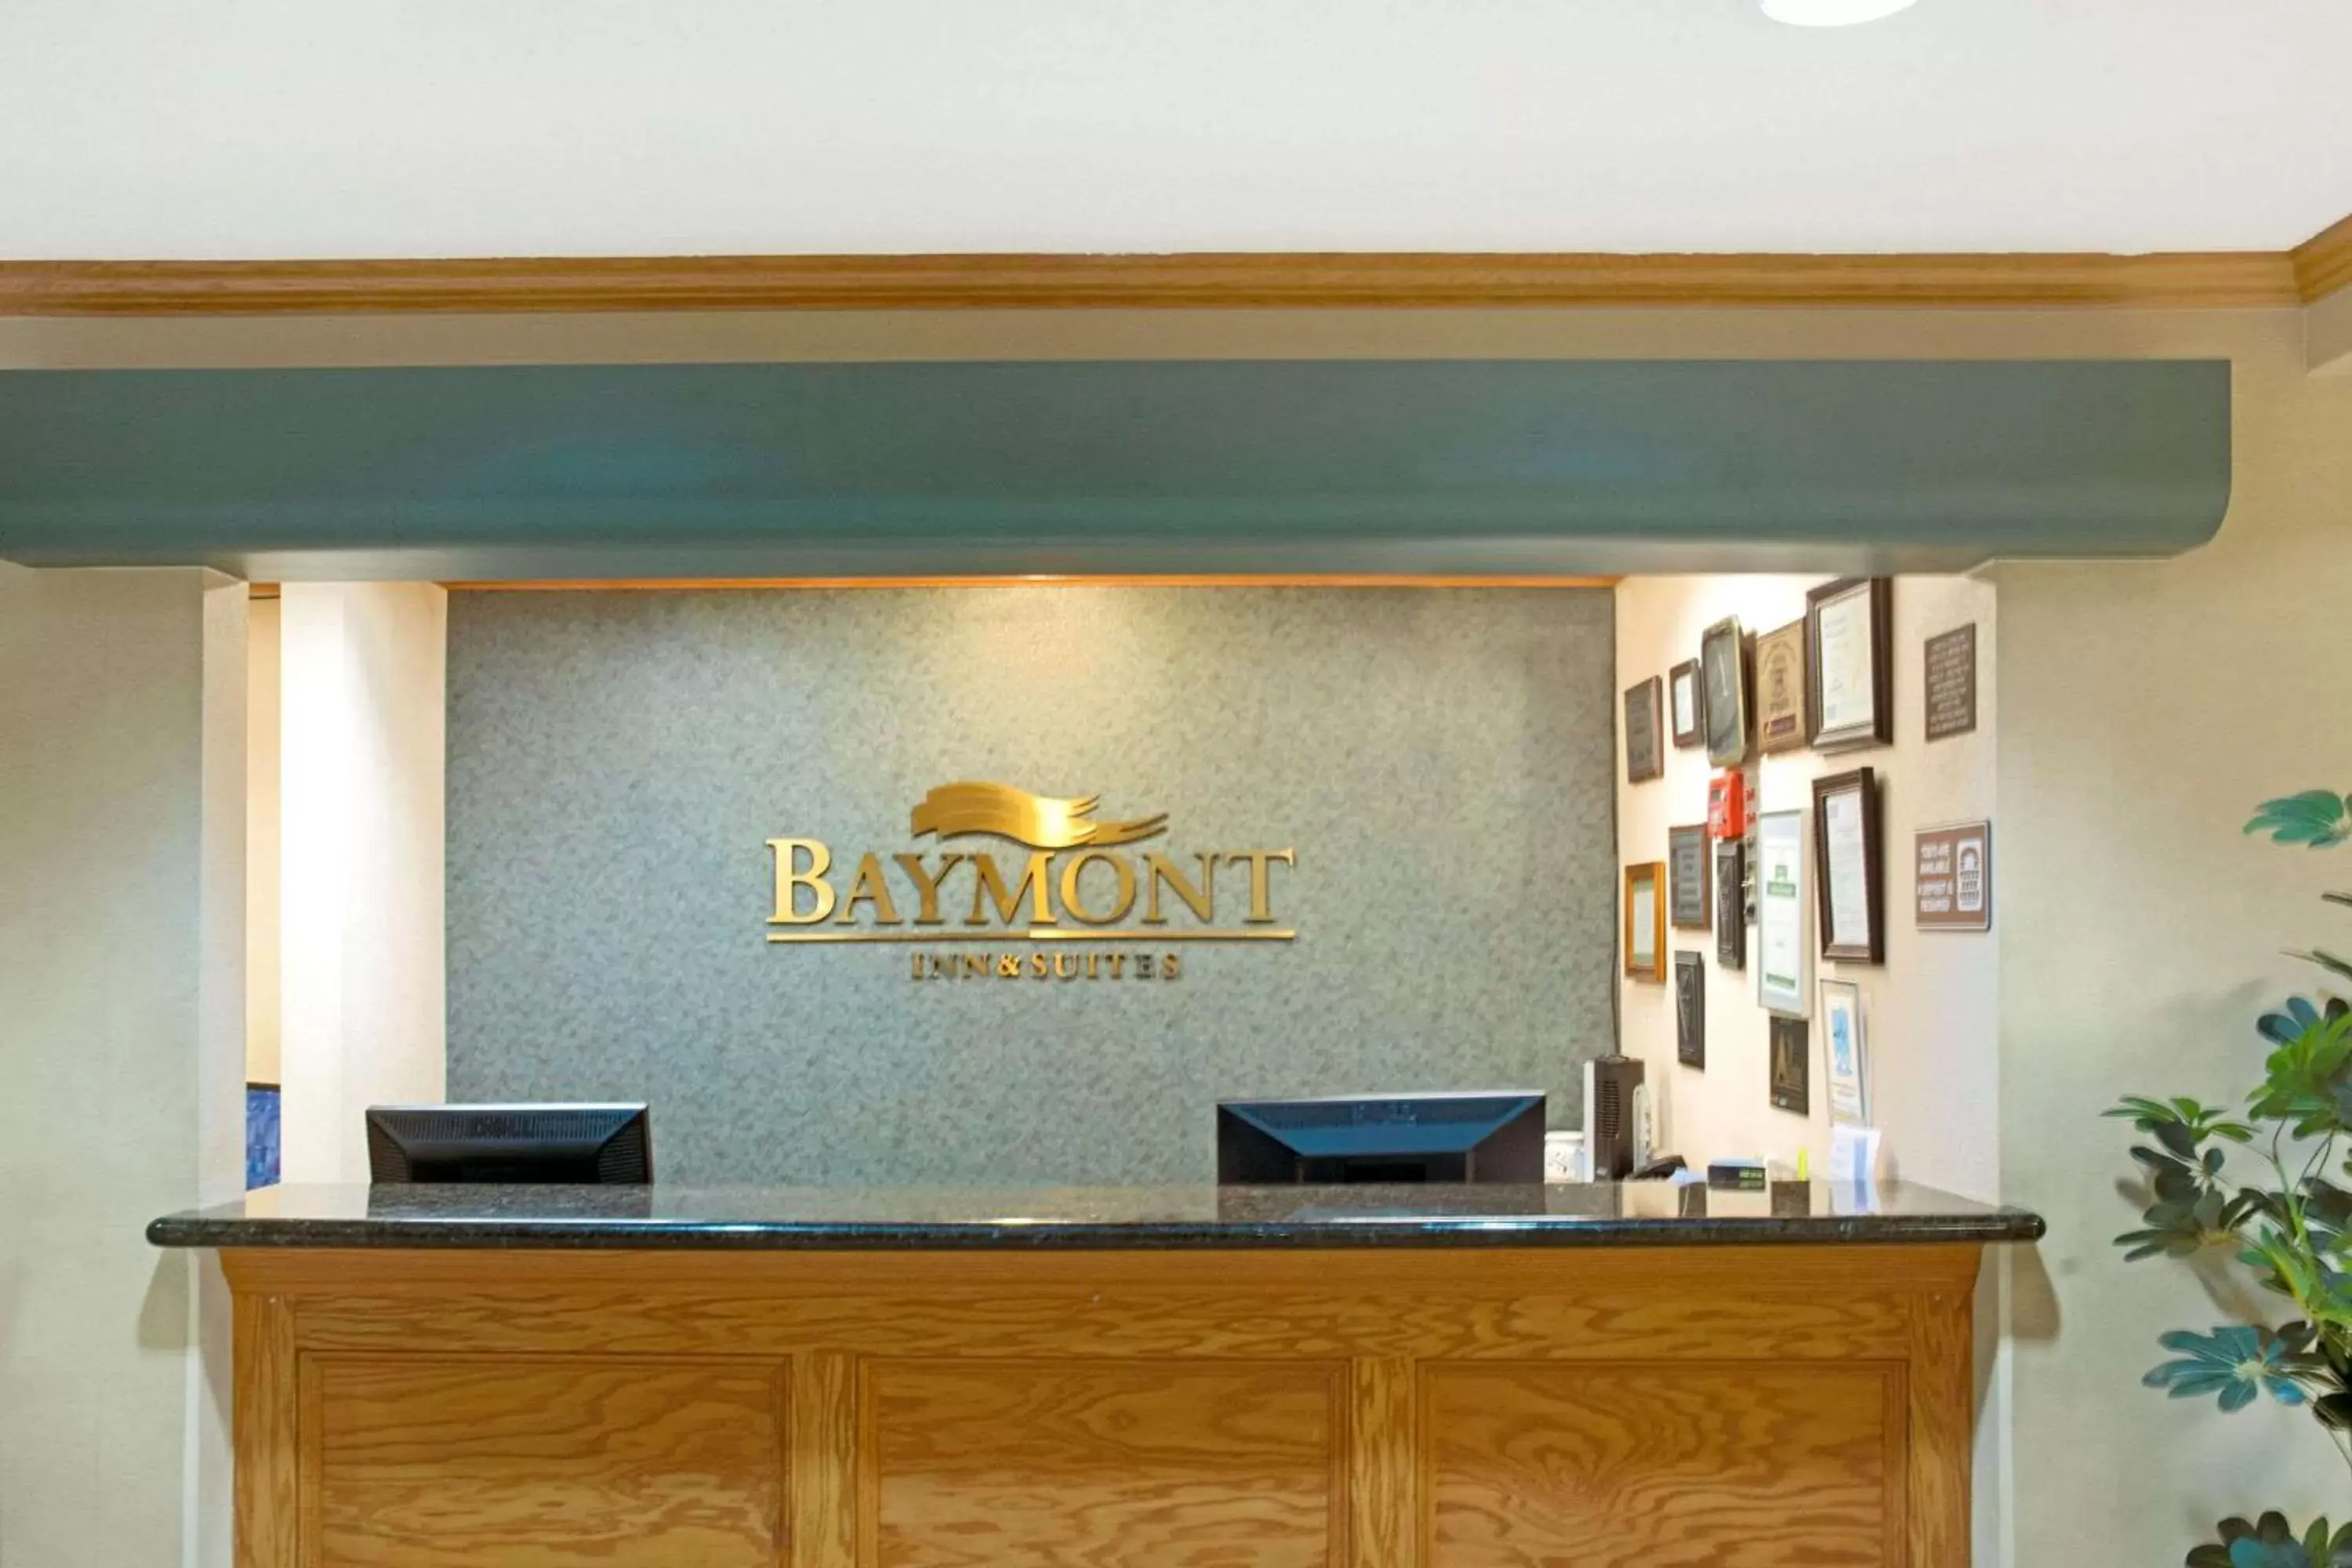 Lobby or reception, Lobby/Reception in Baymont by Wyndham Conroe